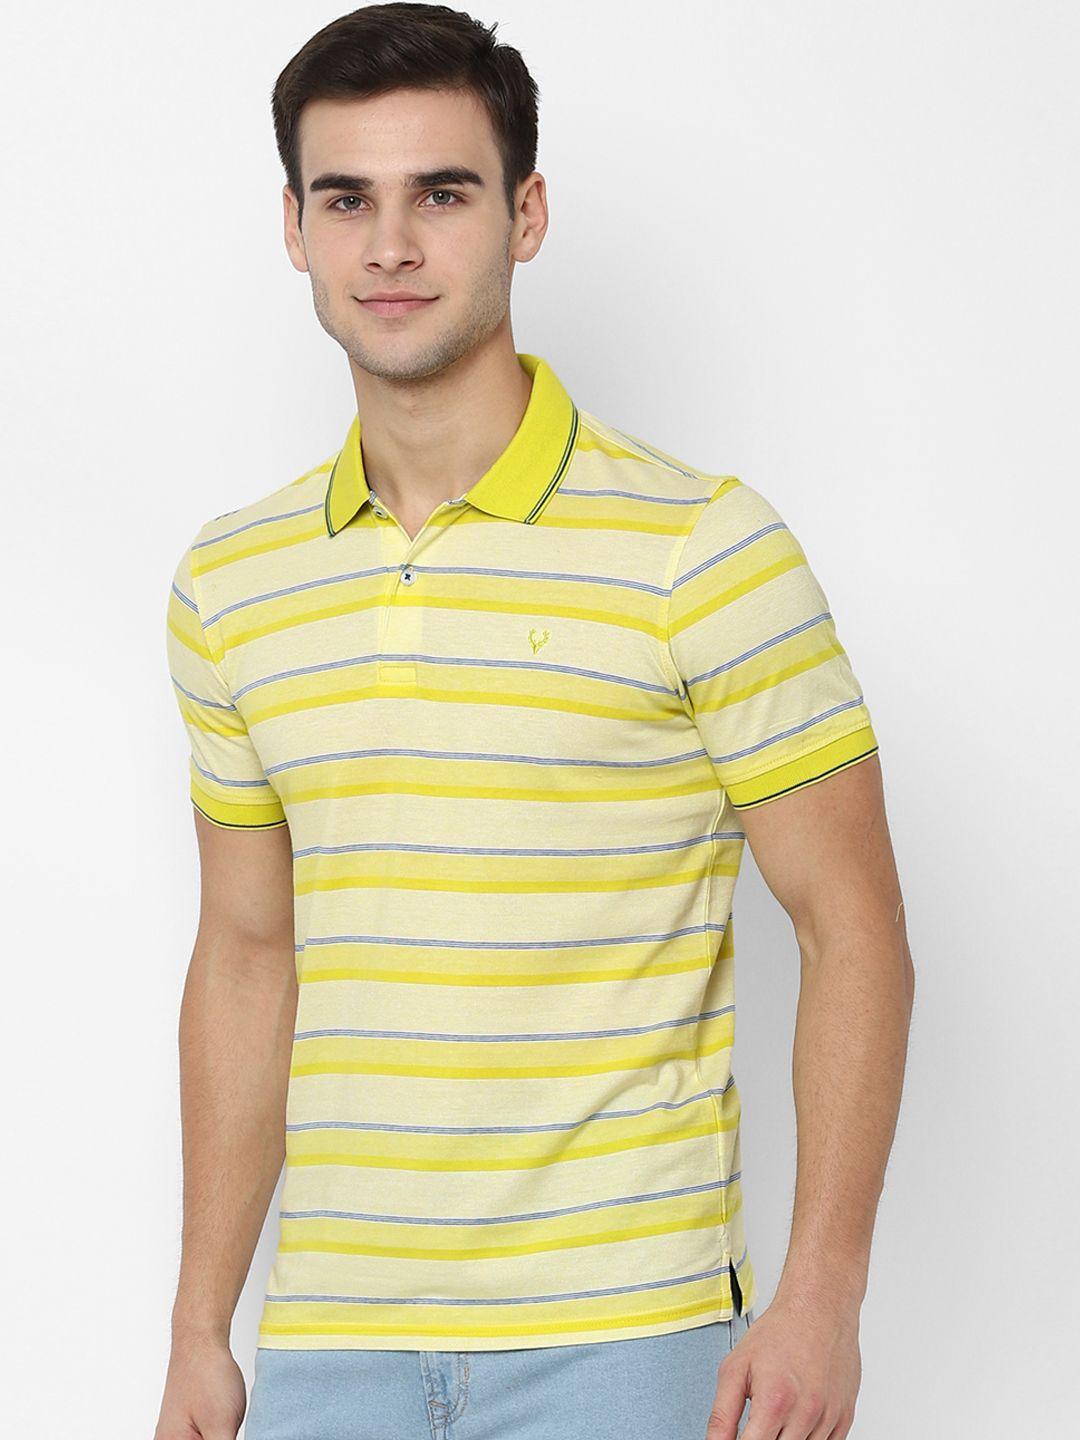 allen solly men yellow striped polo collar t-shirt